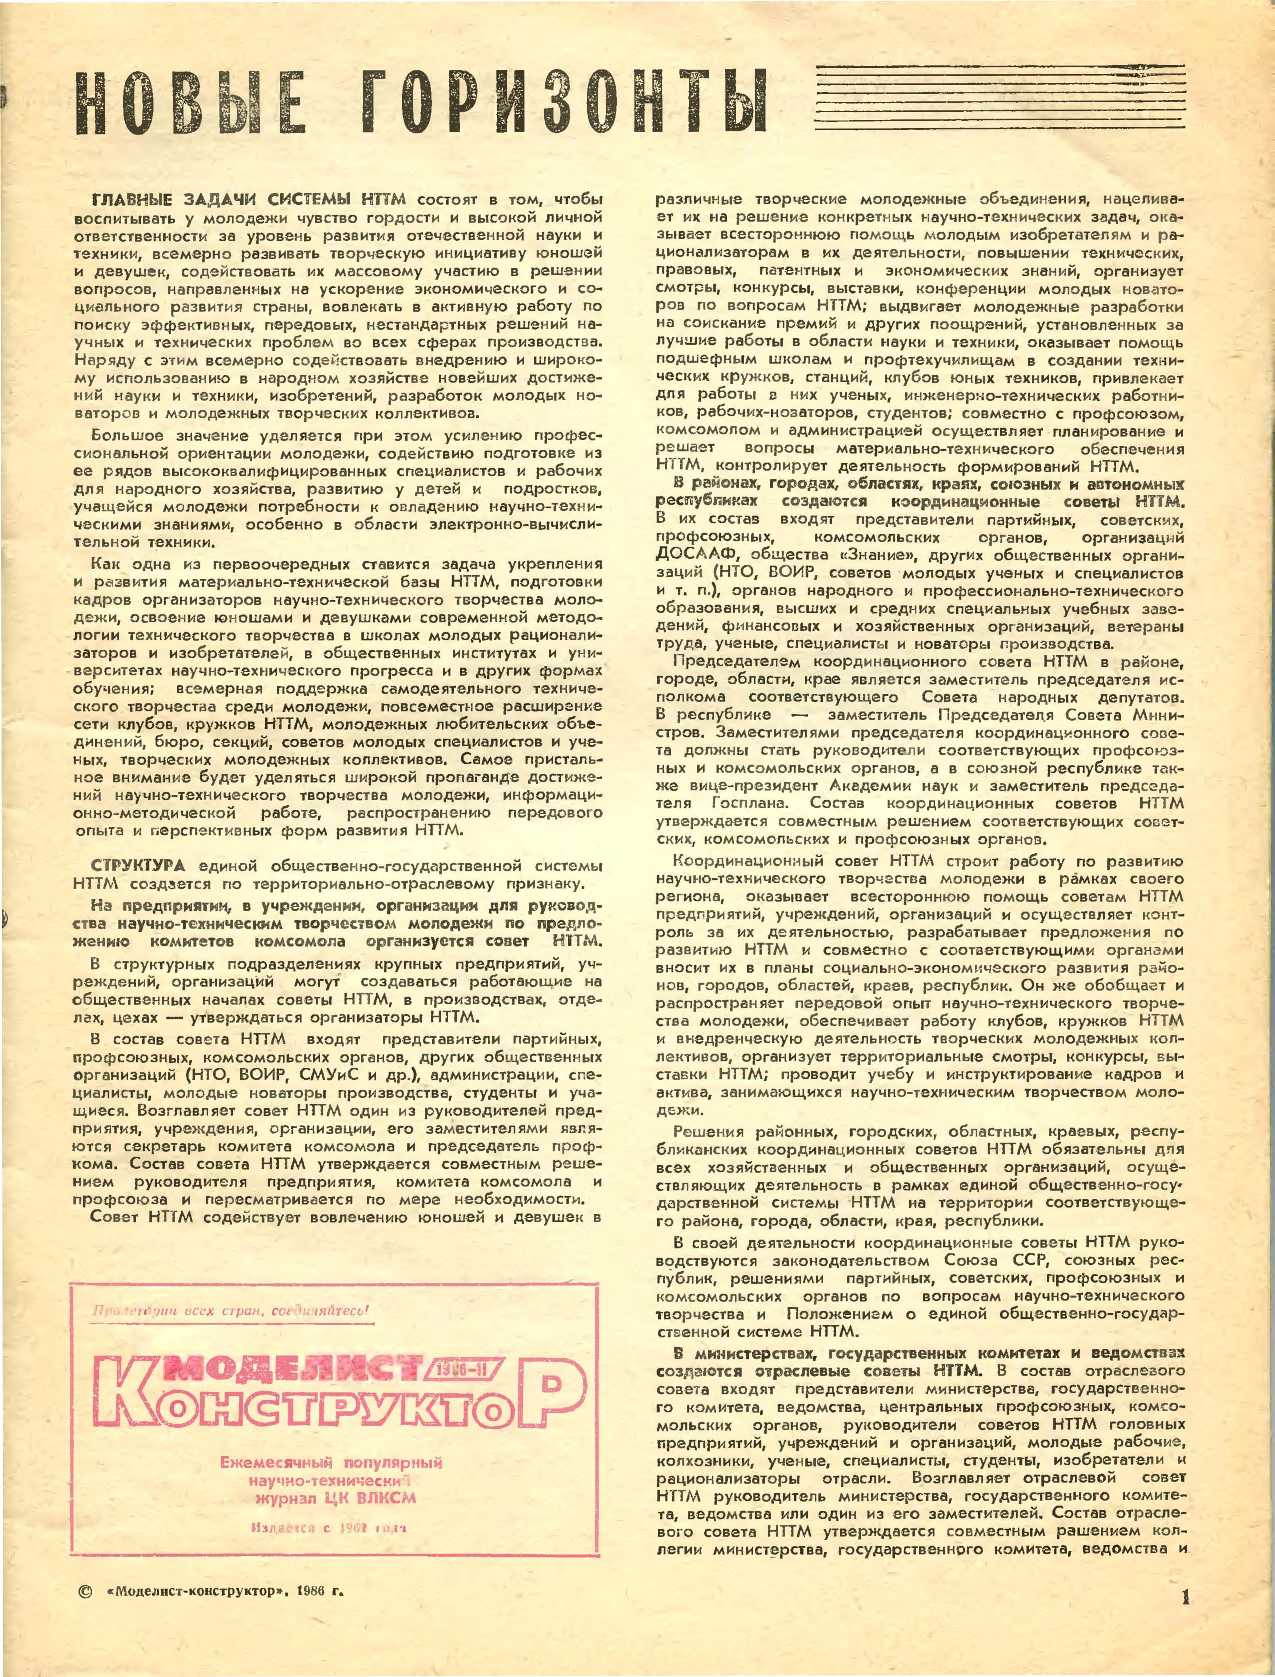 МК 11, 1986, 1 c.